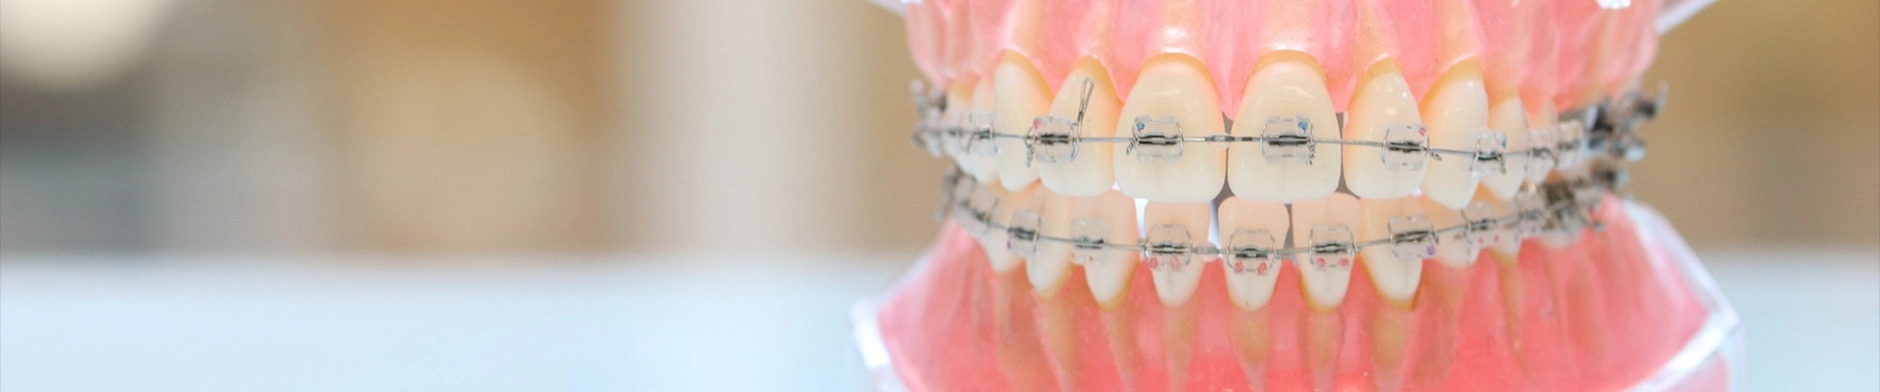 大人の矯正歯科について